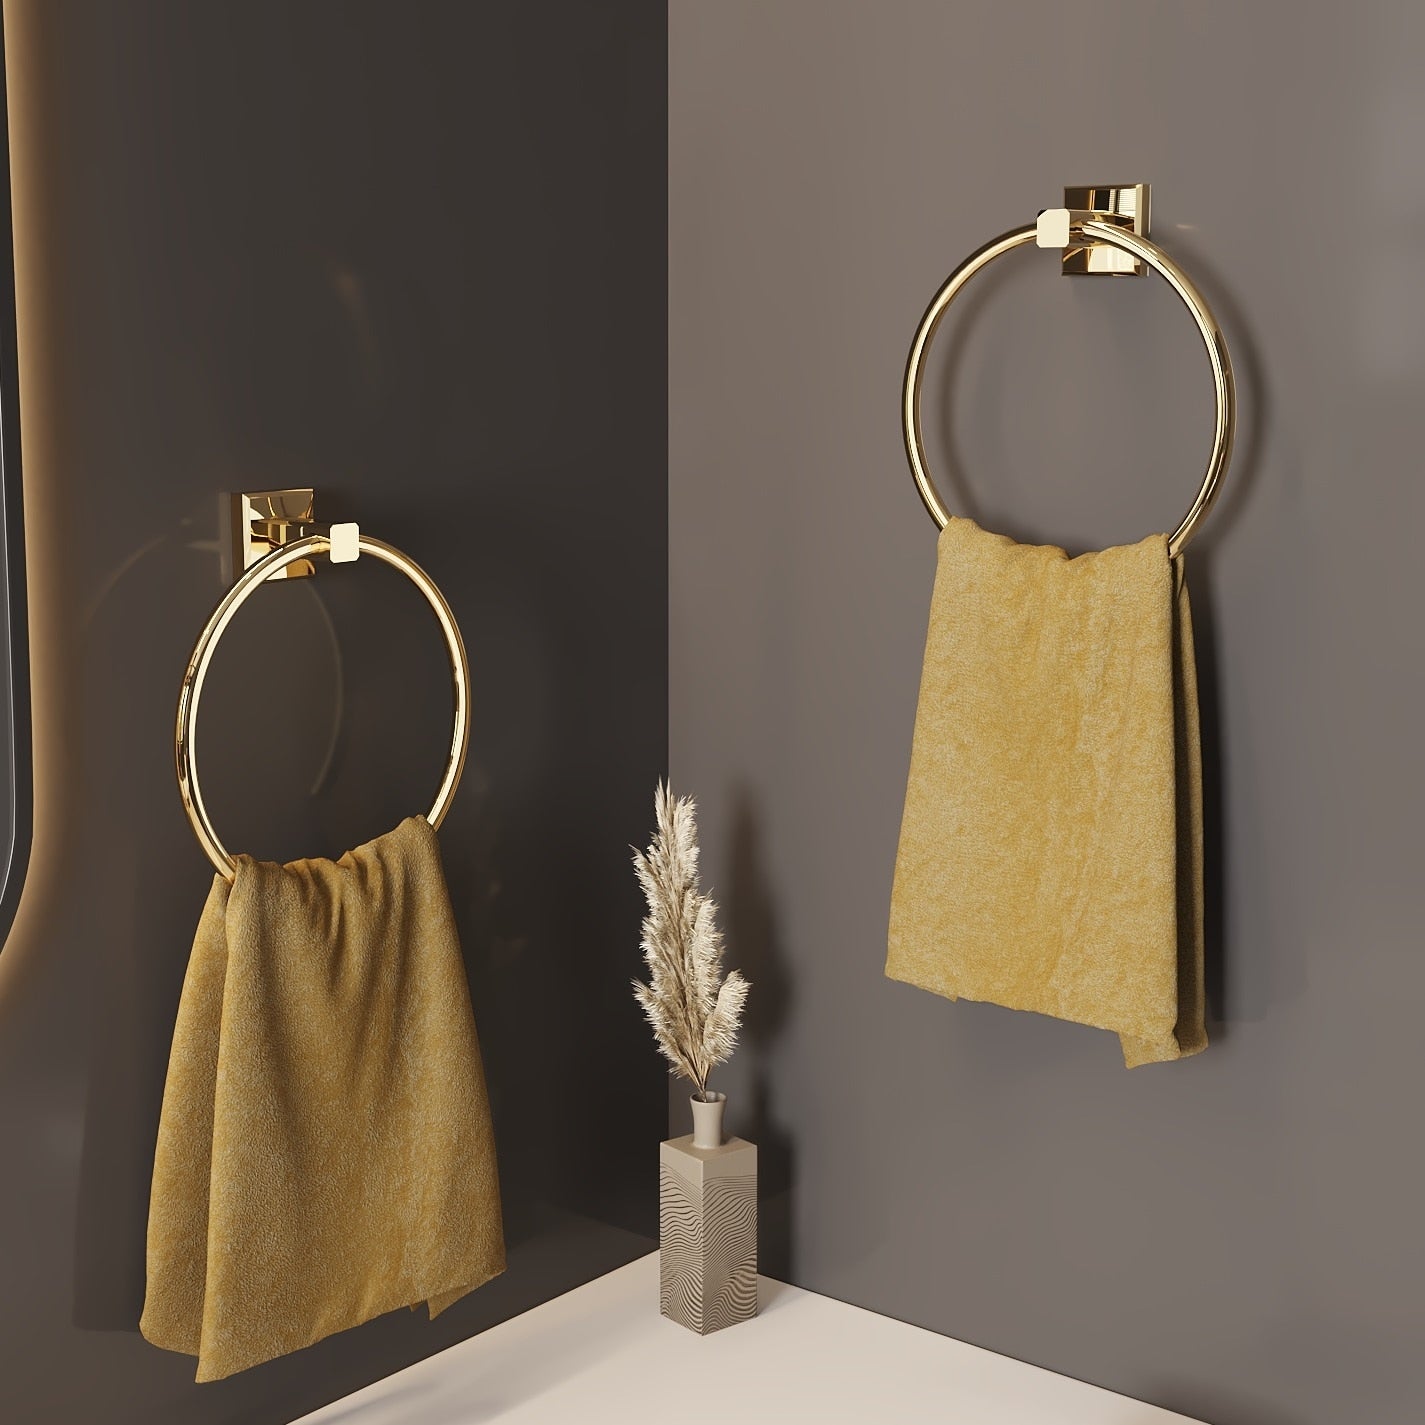 Goldener Handtuchring, Messing-Badezimmer-Accessoire im europäischen Stil - Unique Outlet